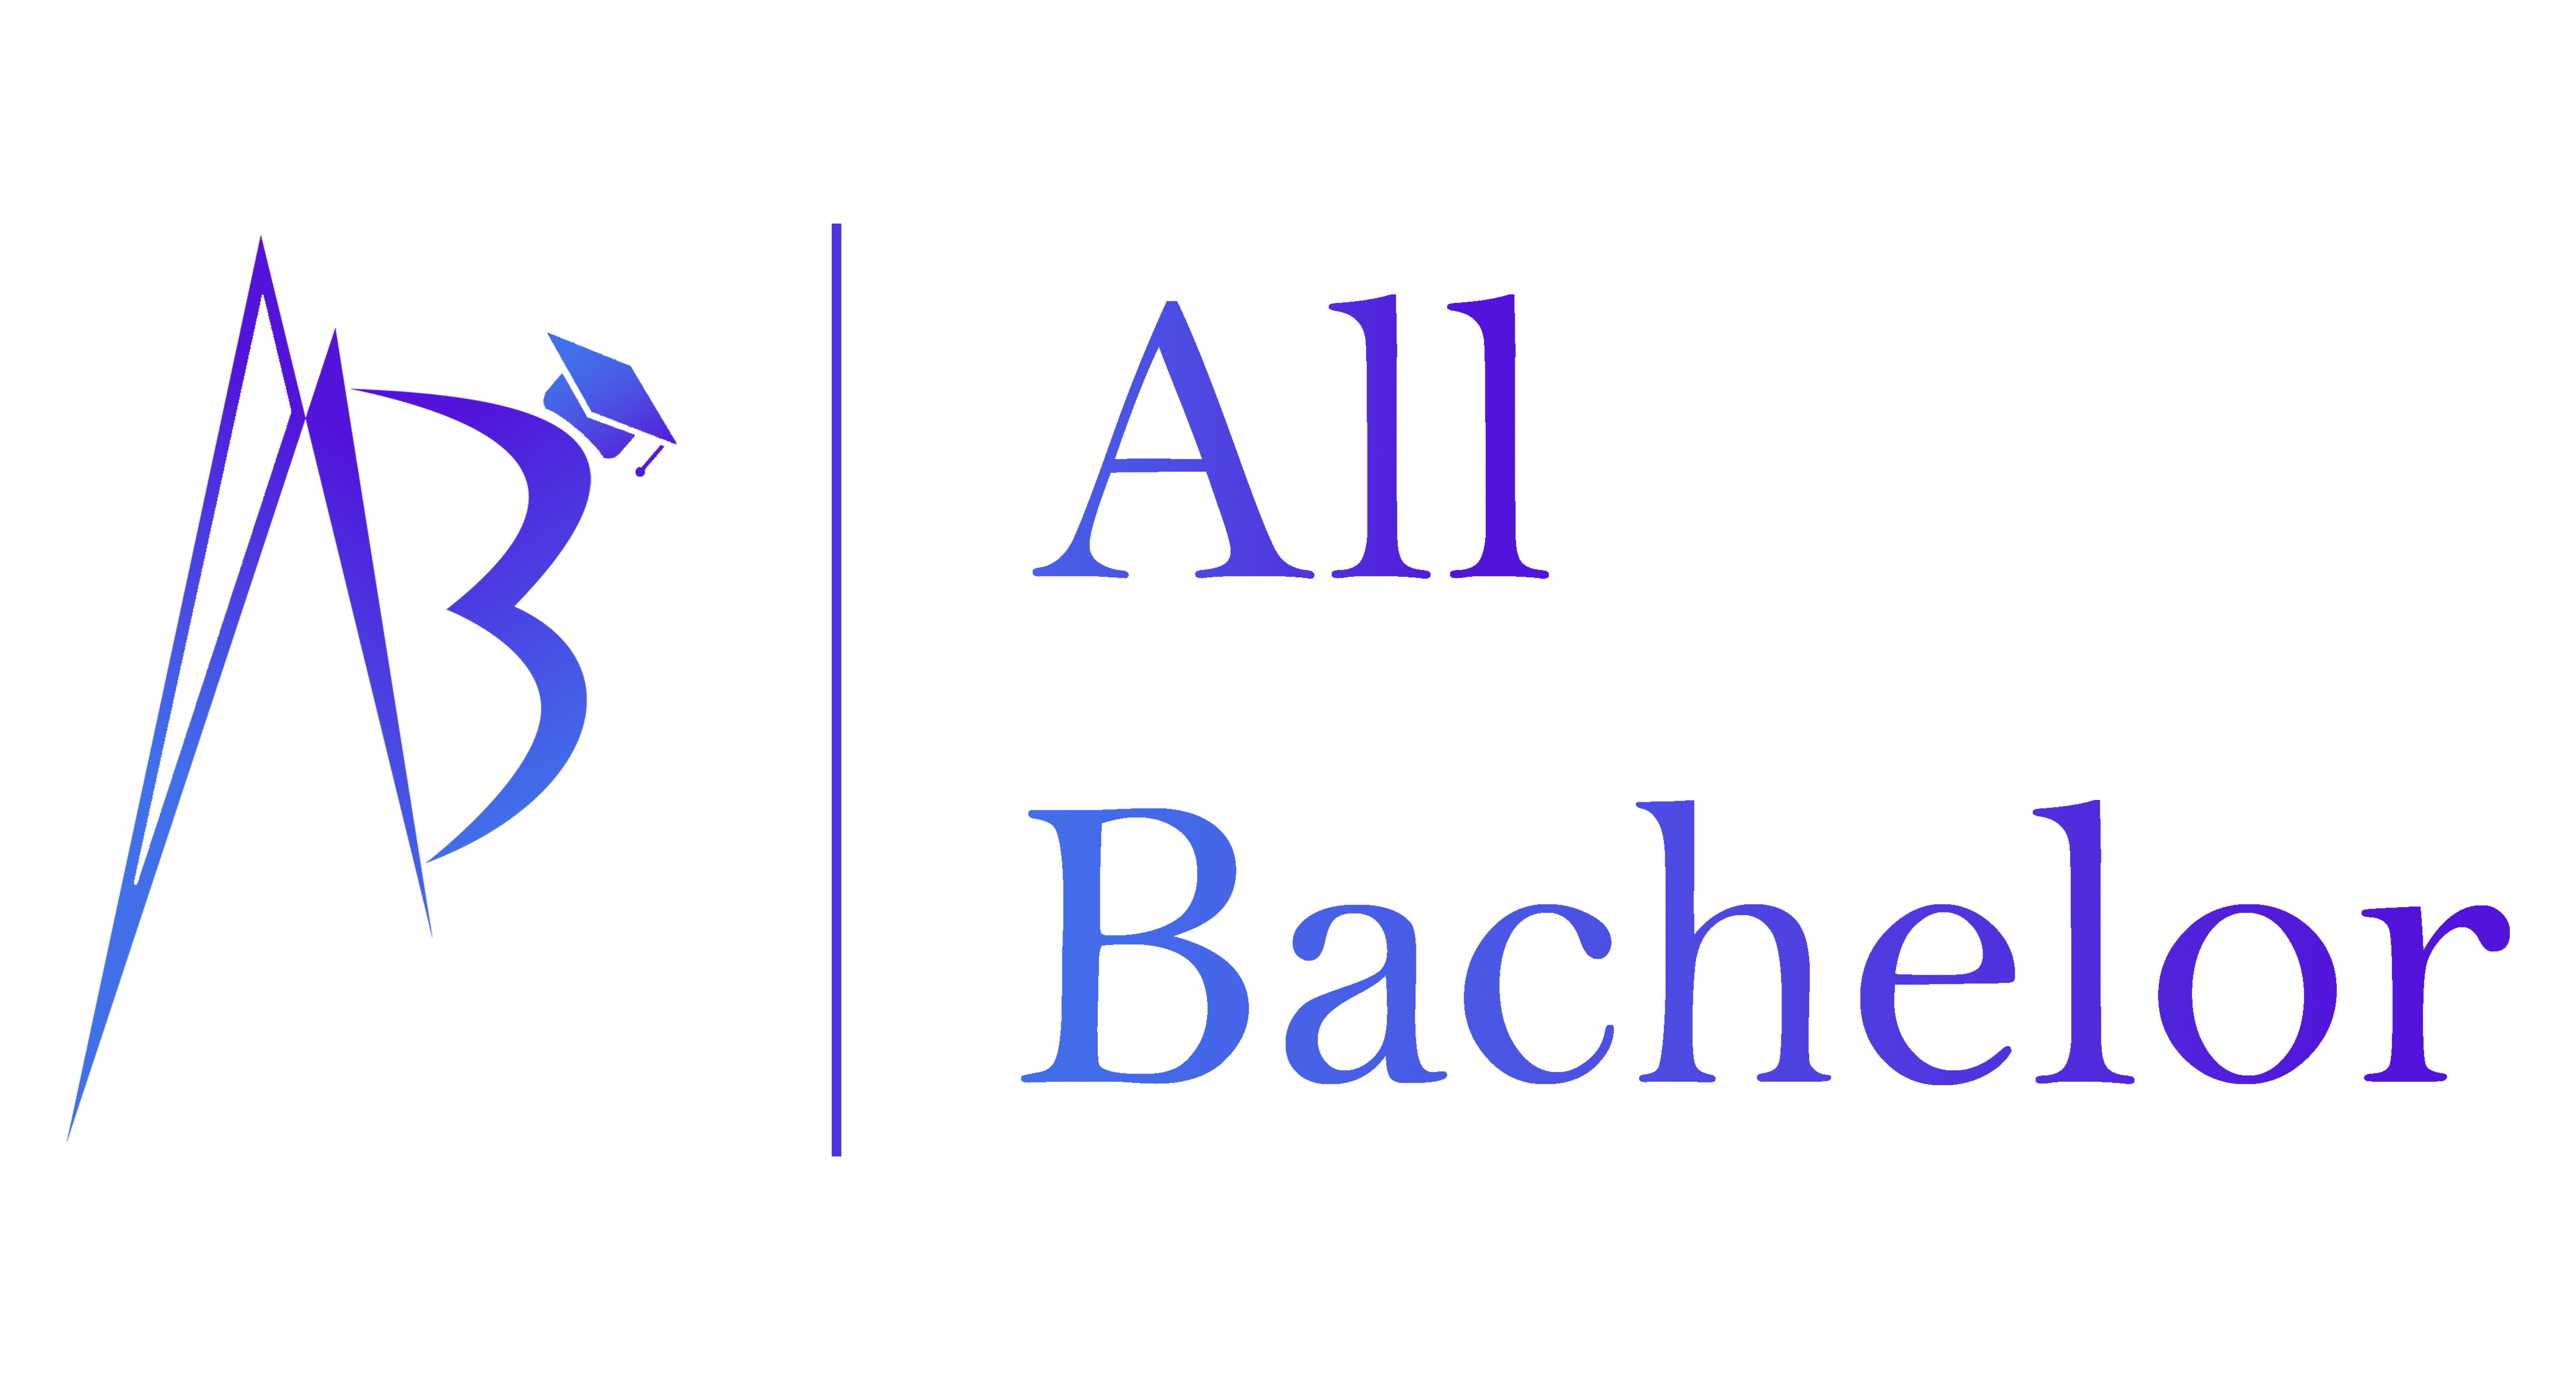 All Bachelor